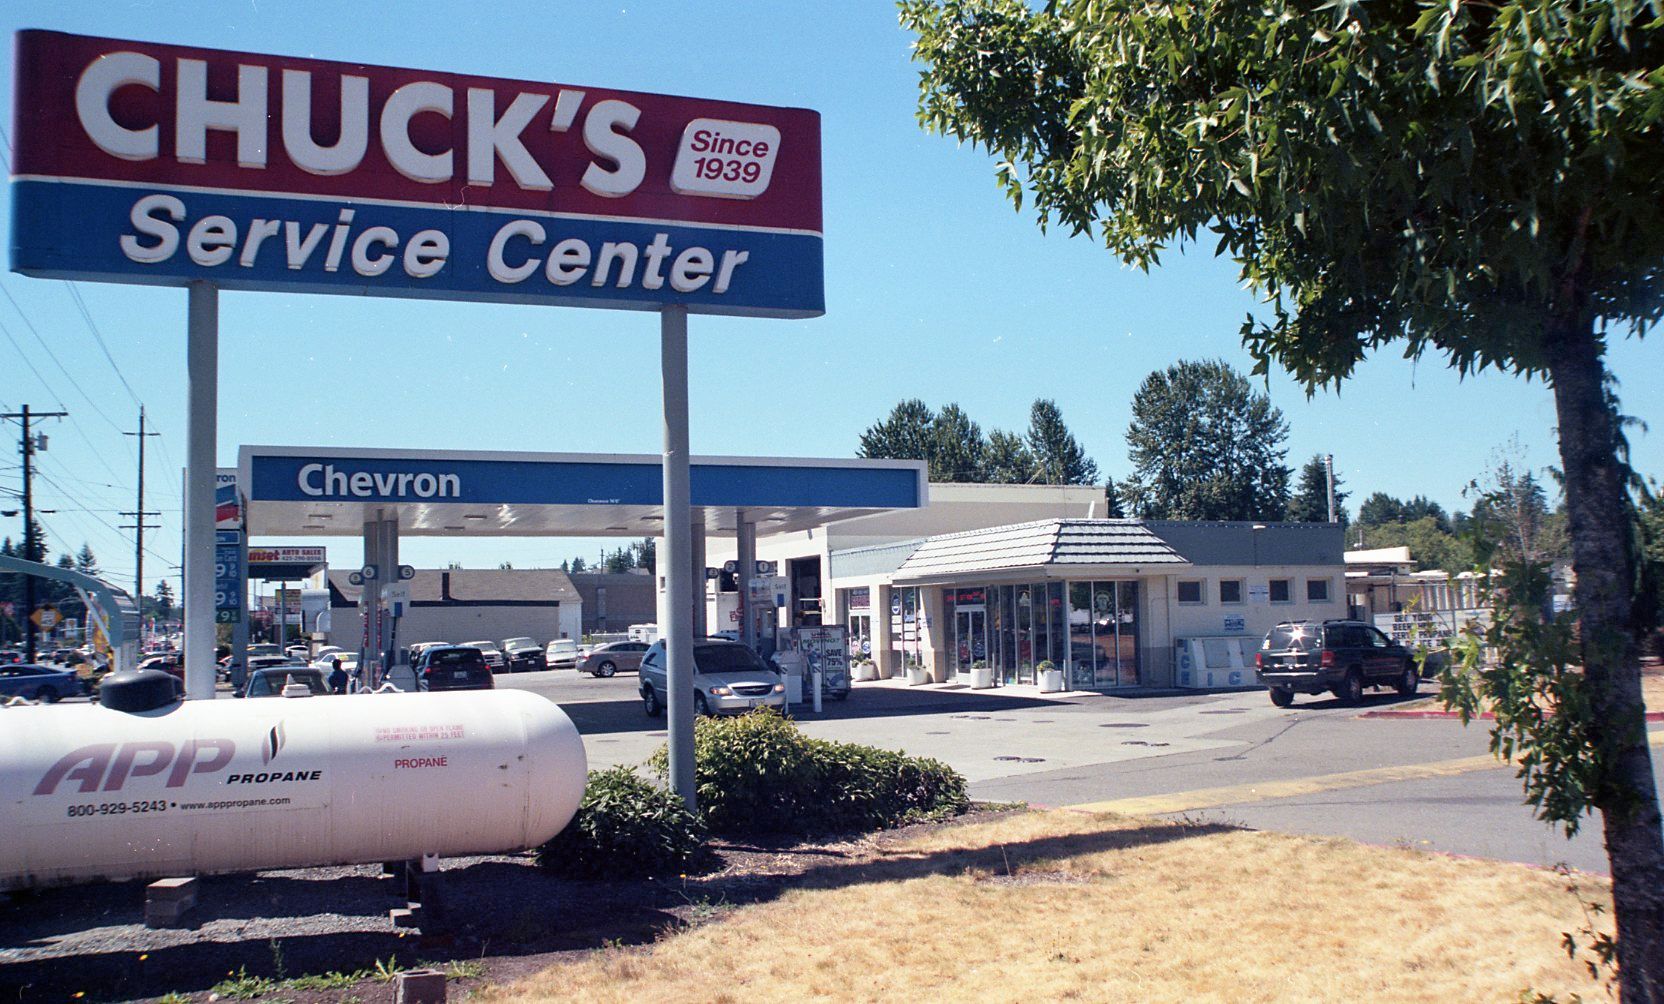 Chuck's Chevron Services Center